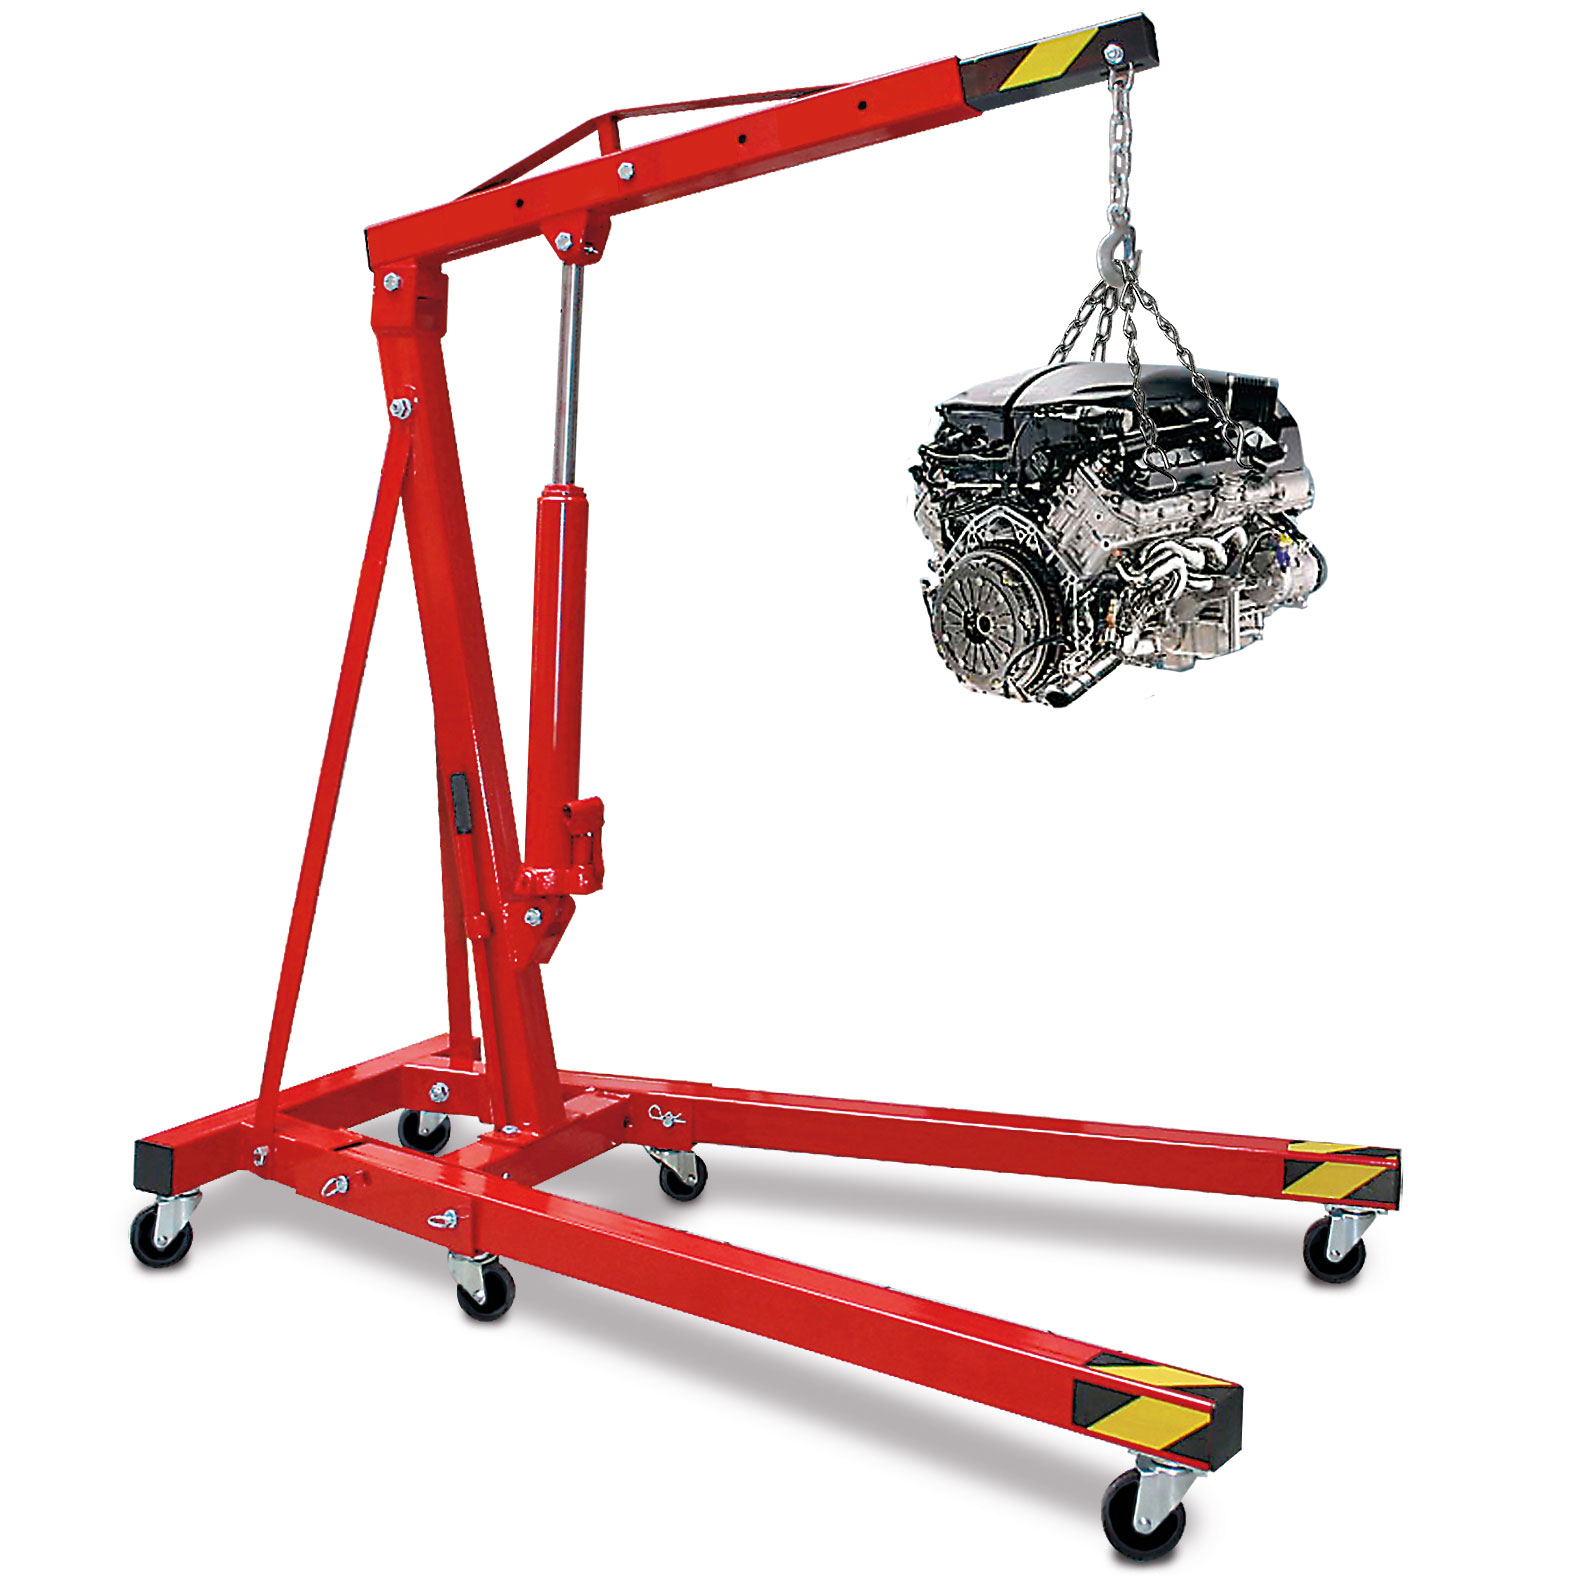 Werkstatt- und Montagekran, rot, LxH 1630x1450-2320 mm, Tragkraft 250-1000 kg, Gewicht 72 kg